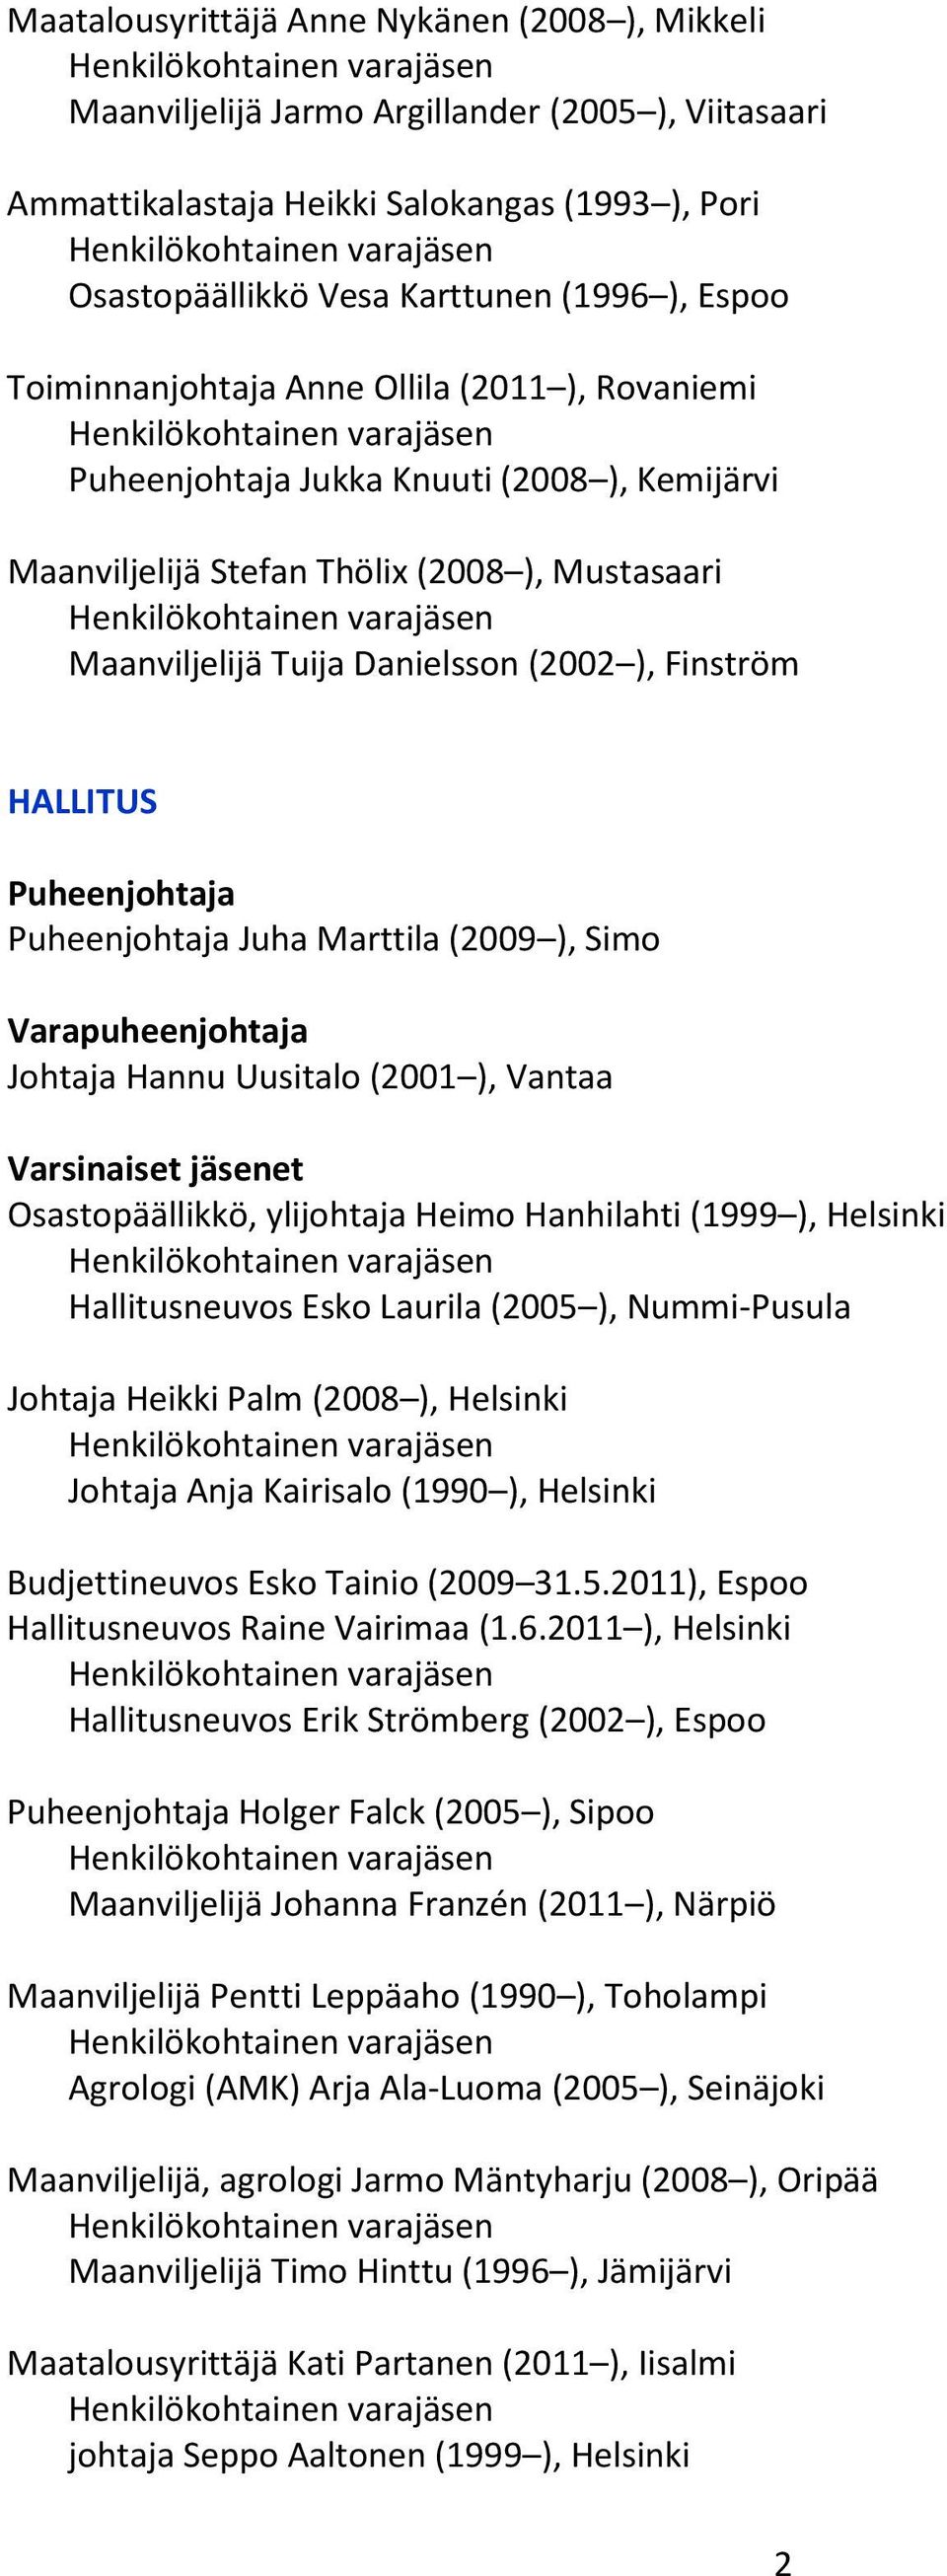 (2009 ), Simo Varapuheenjohtaja Johtaja Hannu Uusitalo (2001 ), Vantaa Varsinaiset jäsenet Osastopäällikkö, ylijohtaja Heimo Hanhilahti (1999 ), Helsinki Hallitusneuvos Esko Laurila (2005 ),